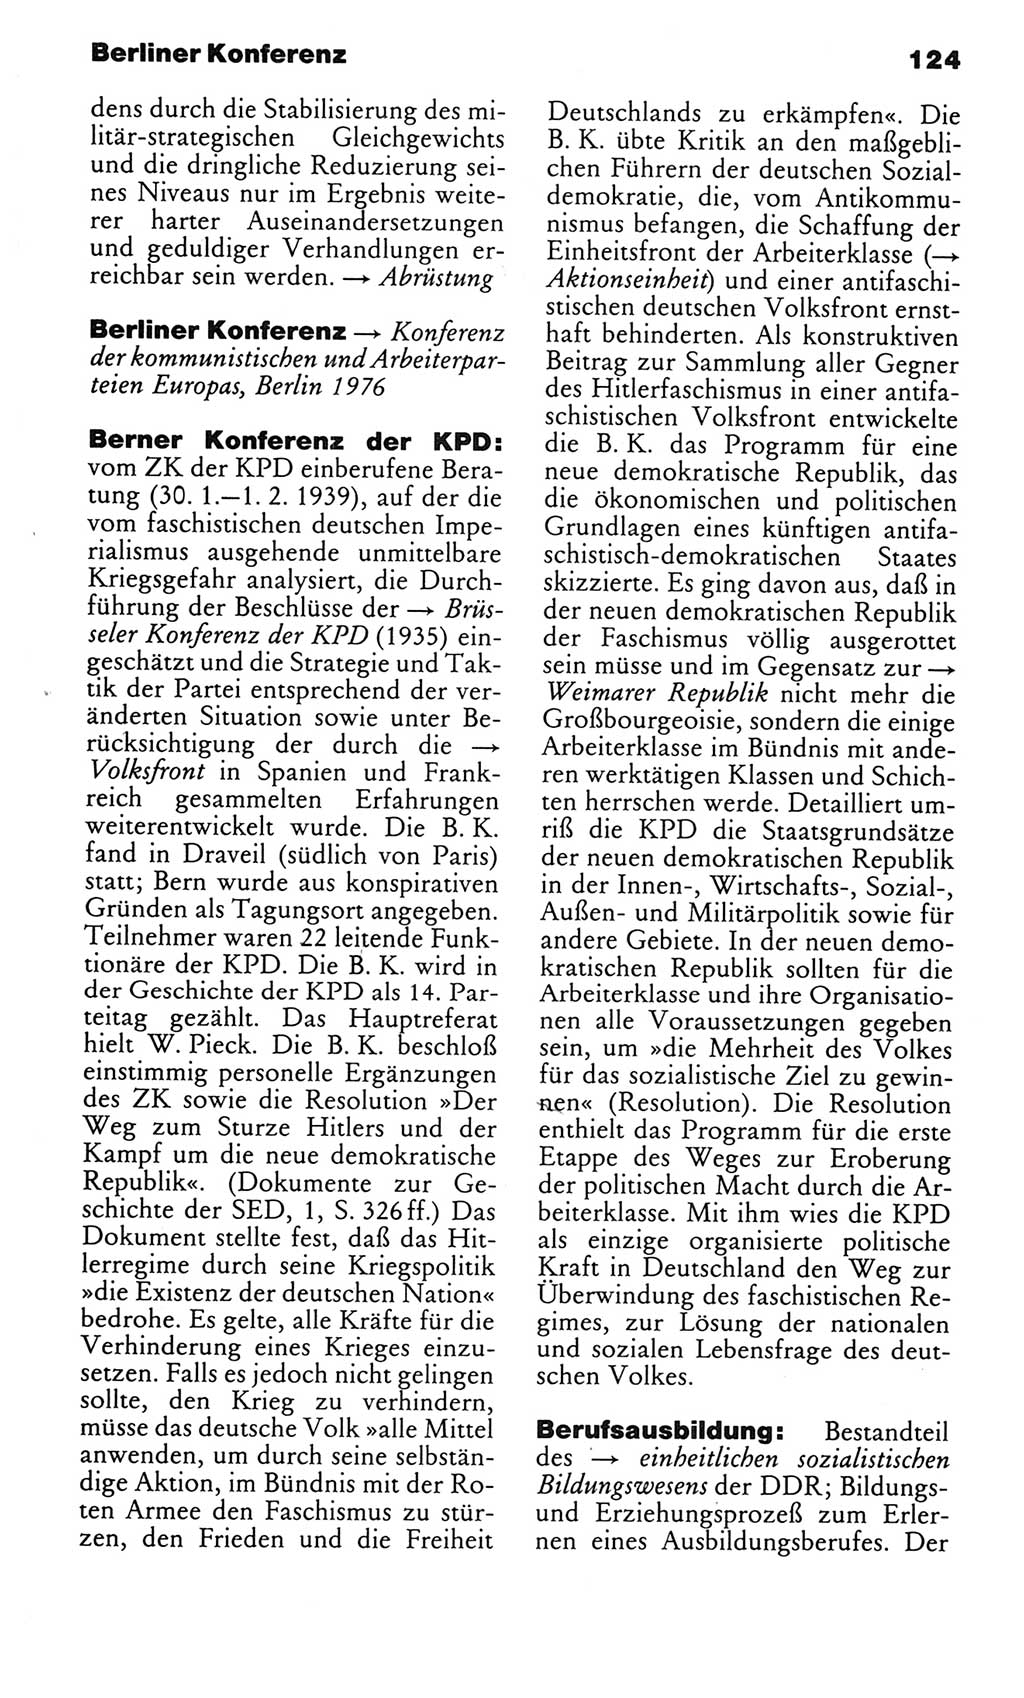 Kleines politisches Wörterbuch [Deutsche Demokratische Republik (DDR)] 1983, Seite 124 (Kl. pol. Wb. DDR 1983, S. 124)